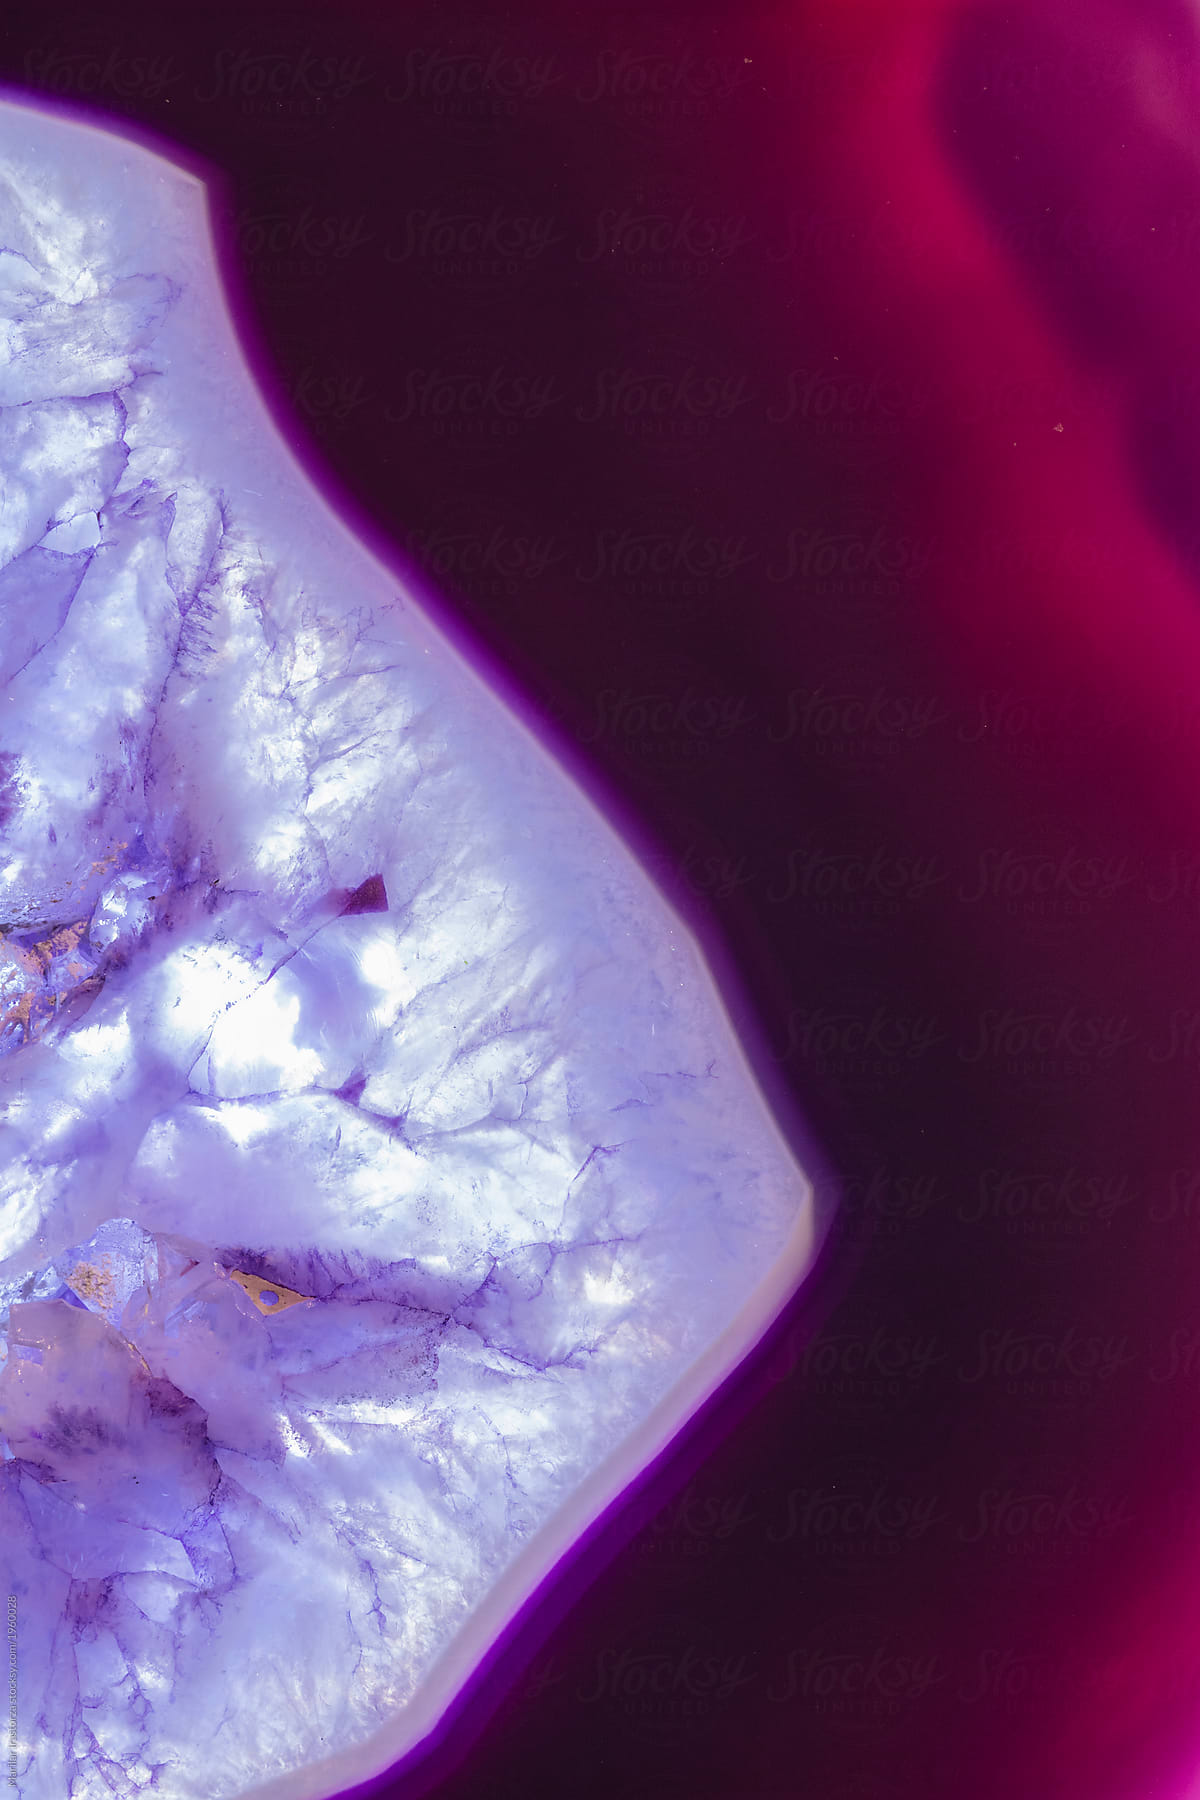 Purple Agate Closeup